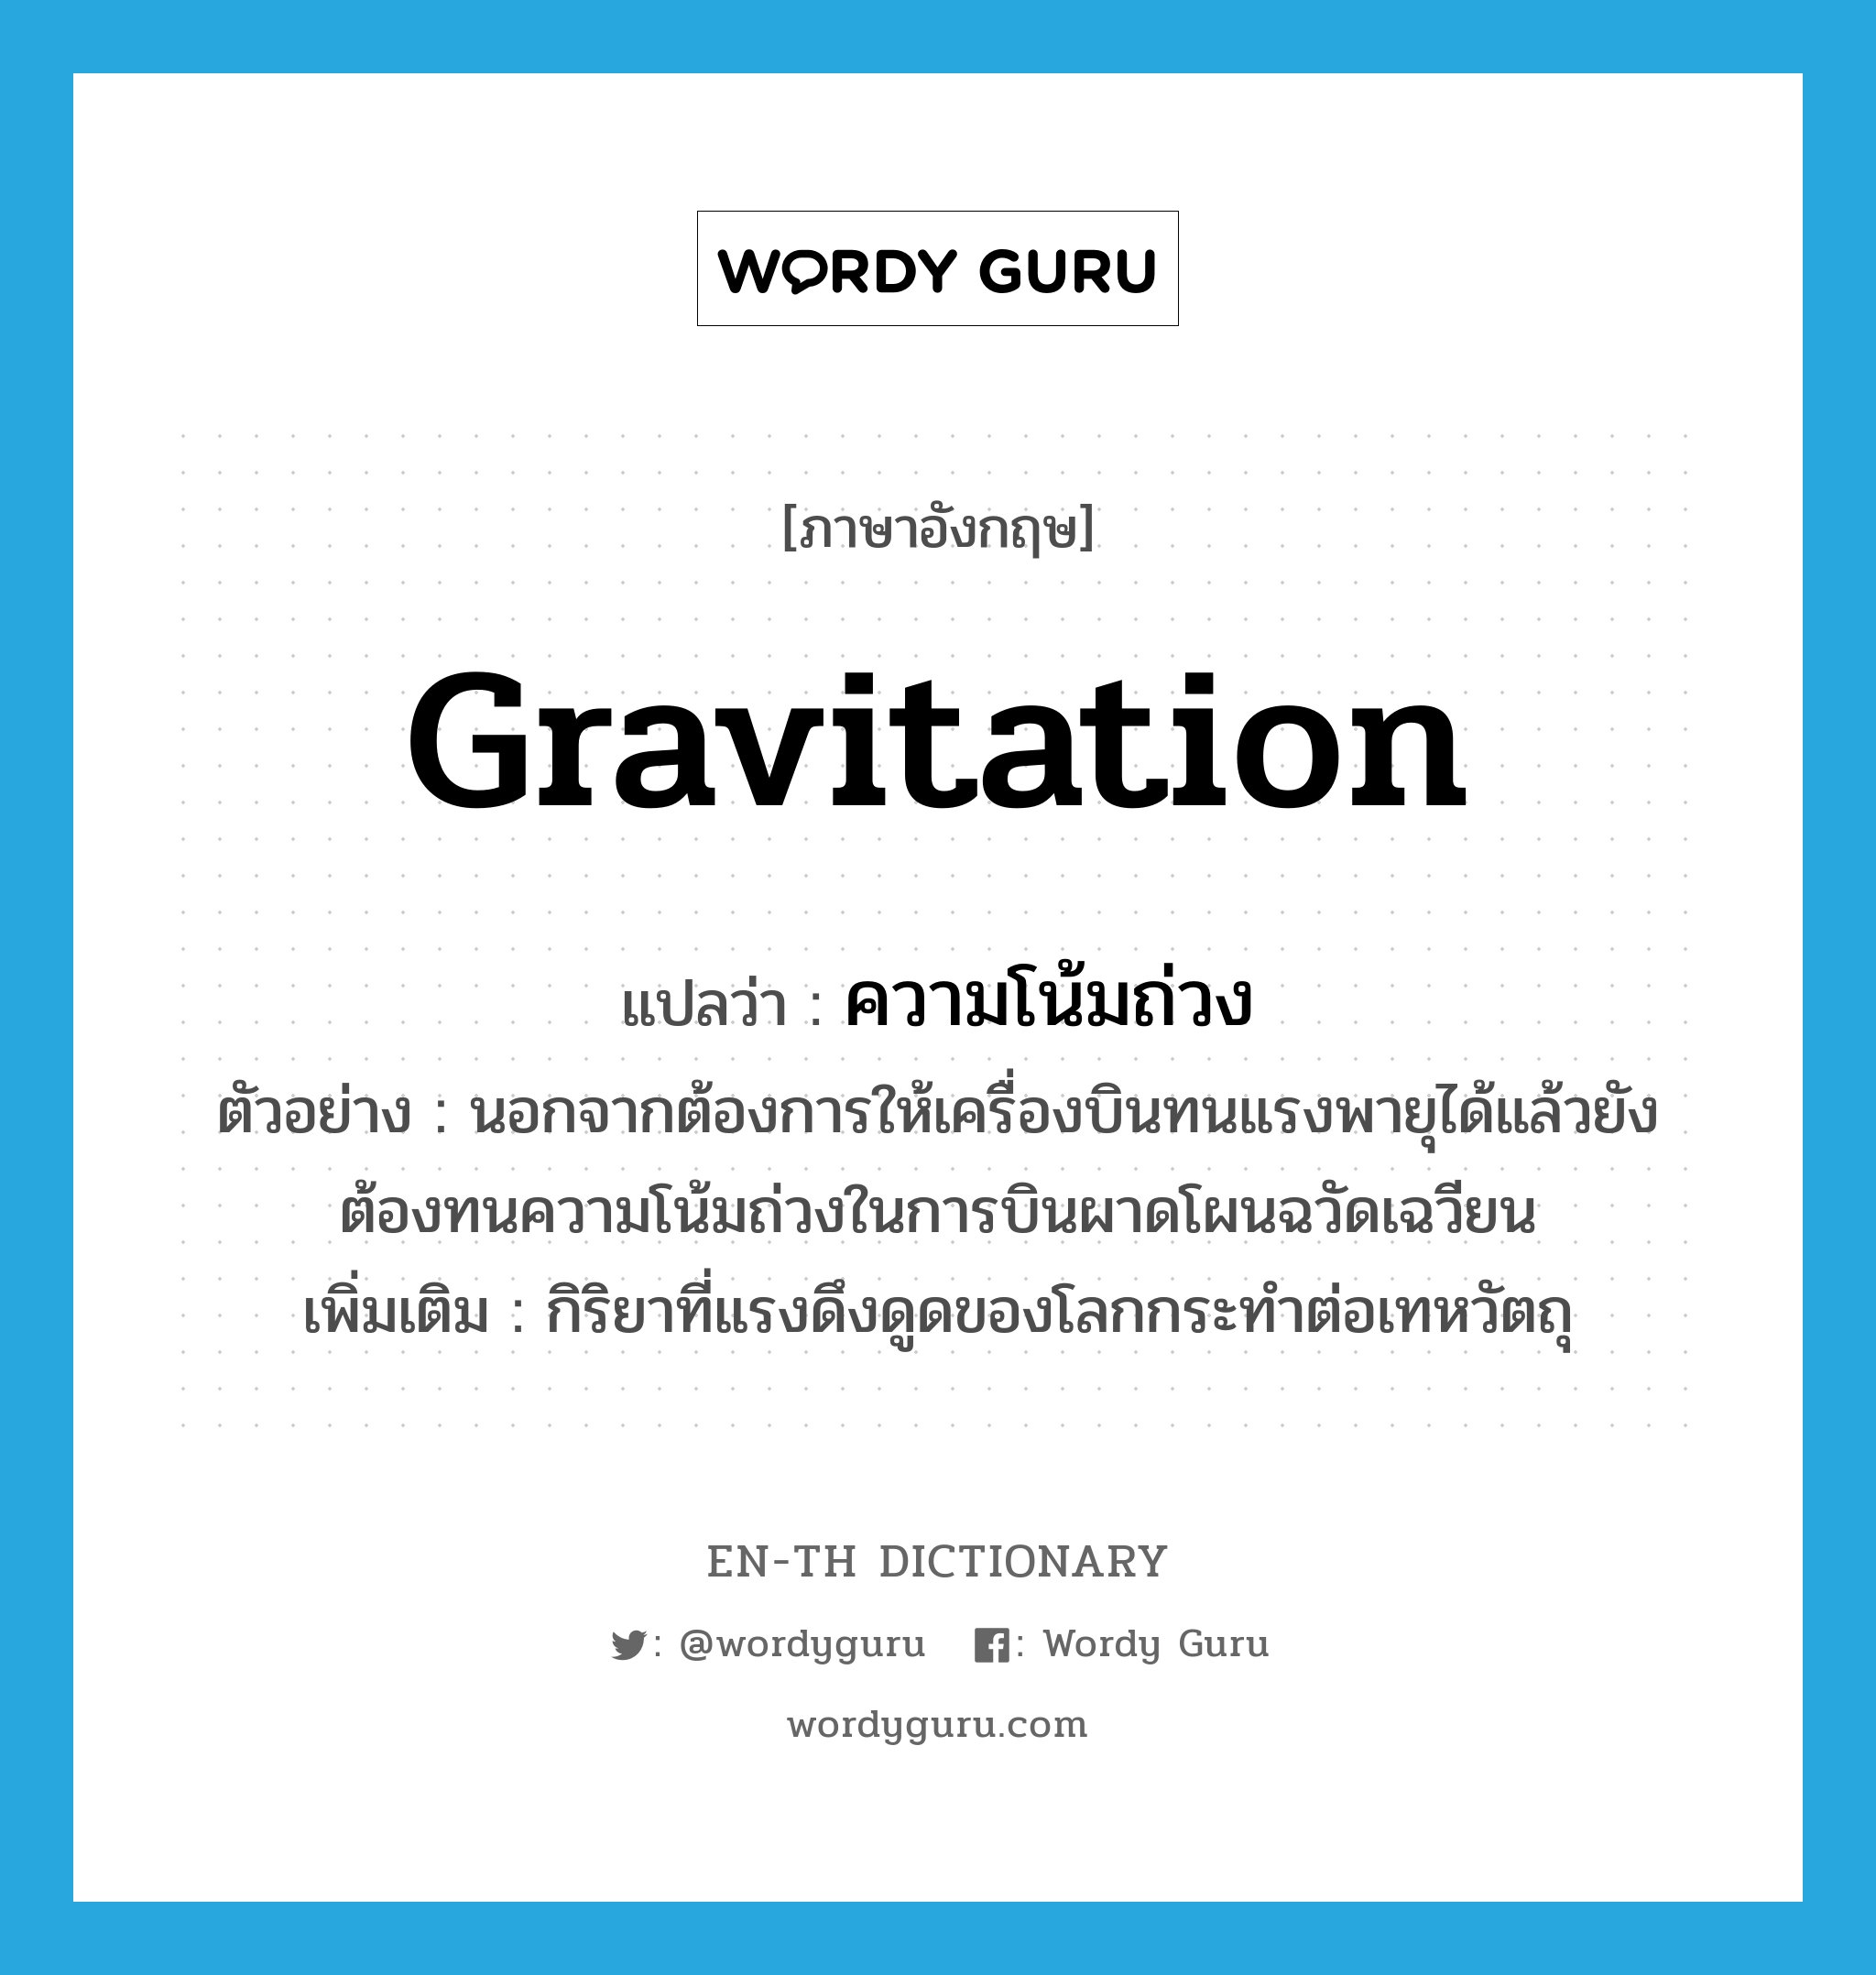 gravitation แปลว่า?, คำศัพท์ภาษาอังกฤษ gravitation แปลว่า ความโน้มถ่วง ประเภท N ตัวอย่าง นอกจากต้องการให้เครื่องบินทนแรงพายุได้แล้วยังต้องทนความโน้มถ่วงในการบินผาดโผนฉวัดเฉวียน เพิ่มเติม กิริยาที่แรงดึงดูดของโลกกระทำต่อเทหวัตถุ หมวด N